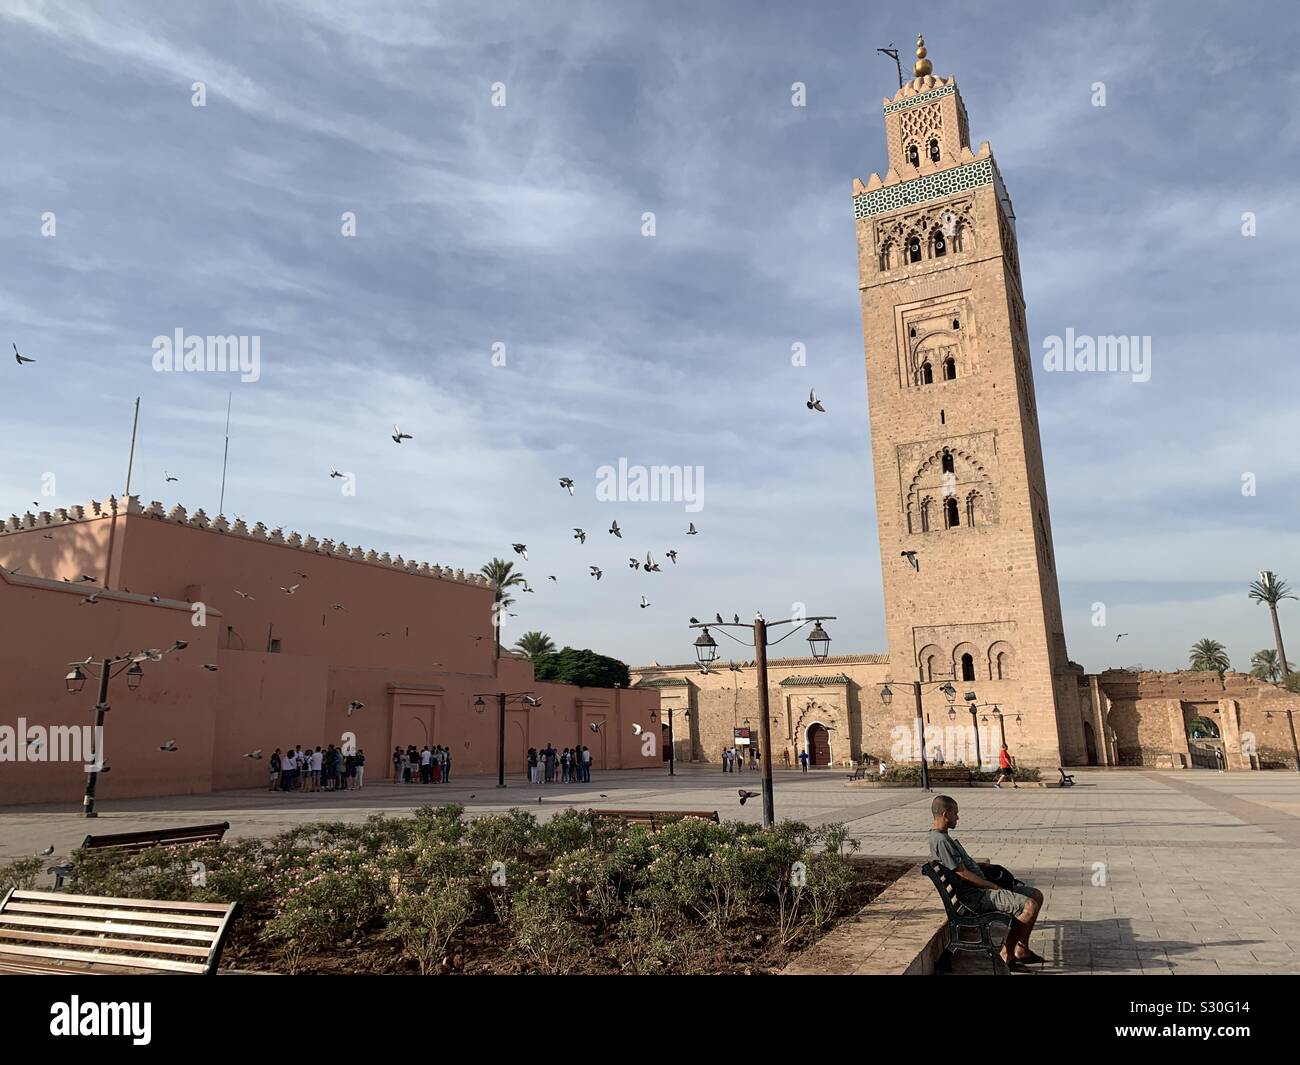 The Koutoubia Mosque. Marrakech, Morocco Stock Photo